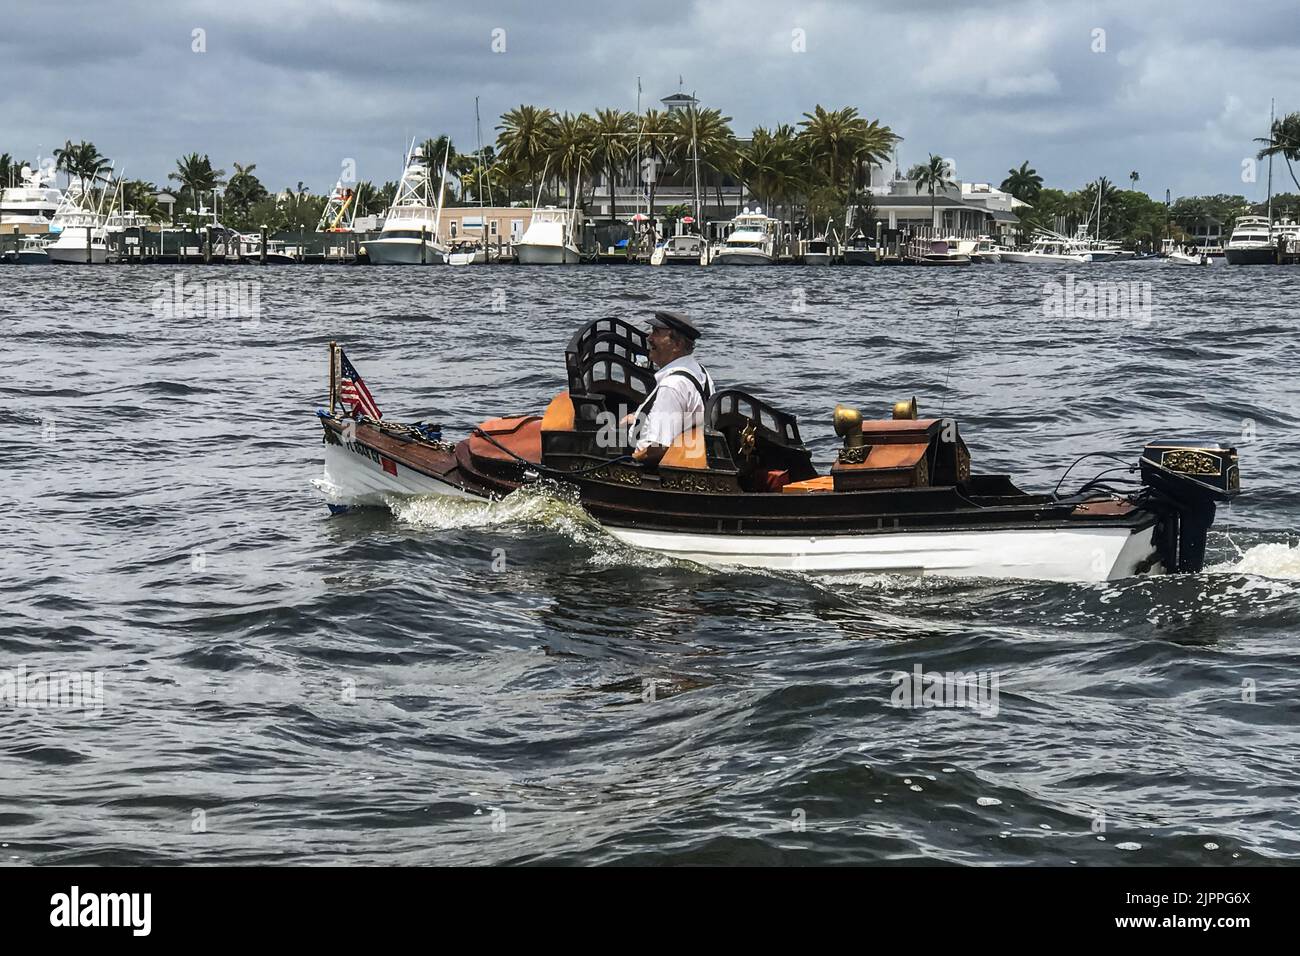 FORT LAUDERDALE, FL / EE.UU. - 23 DE MAYO: Un hombre dirige un extraño y peculiar barco a lo largo de la vía intracostera el 23 de mayo de 2020 en Fort Lauderdale, FL. Foto de stock